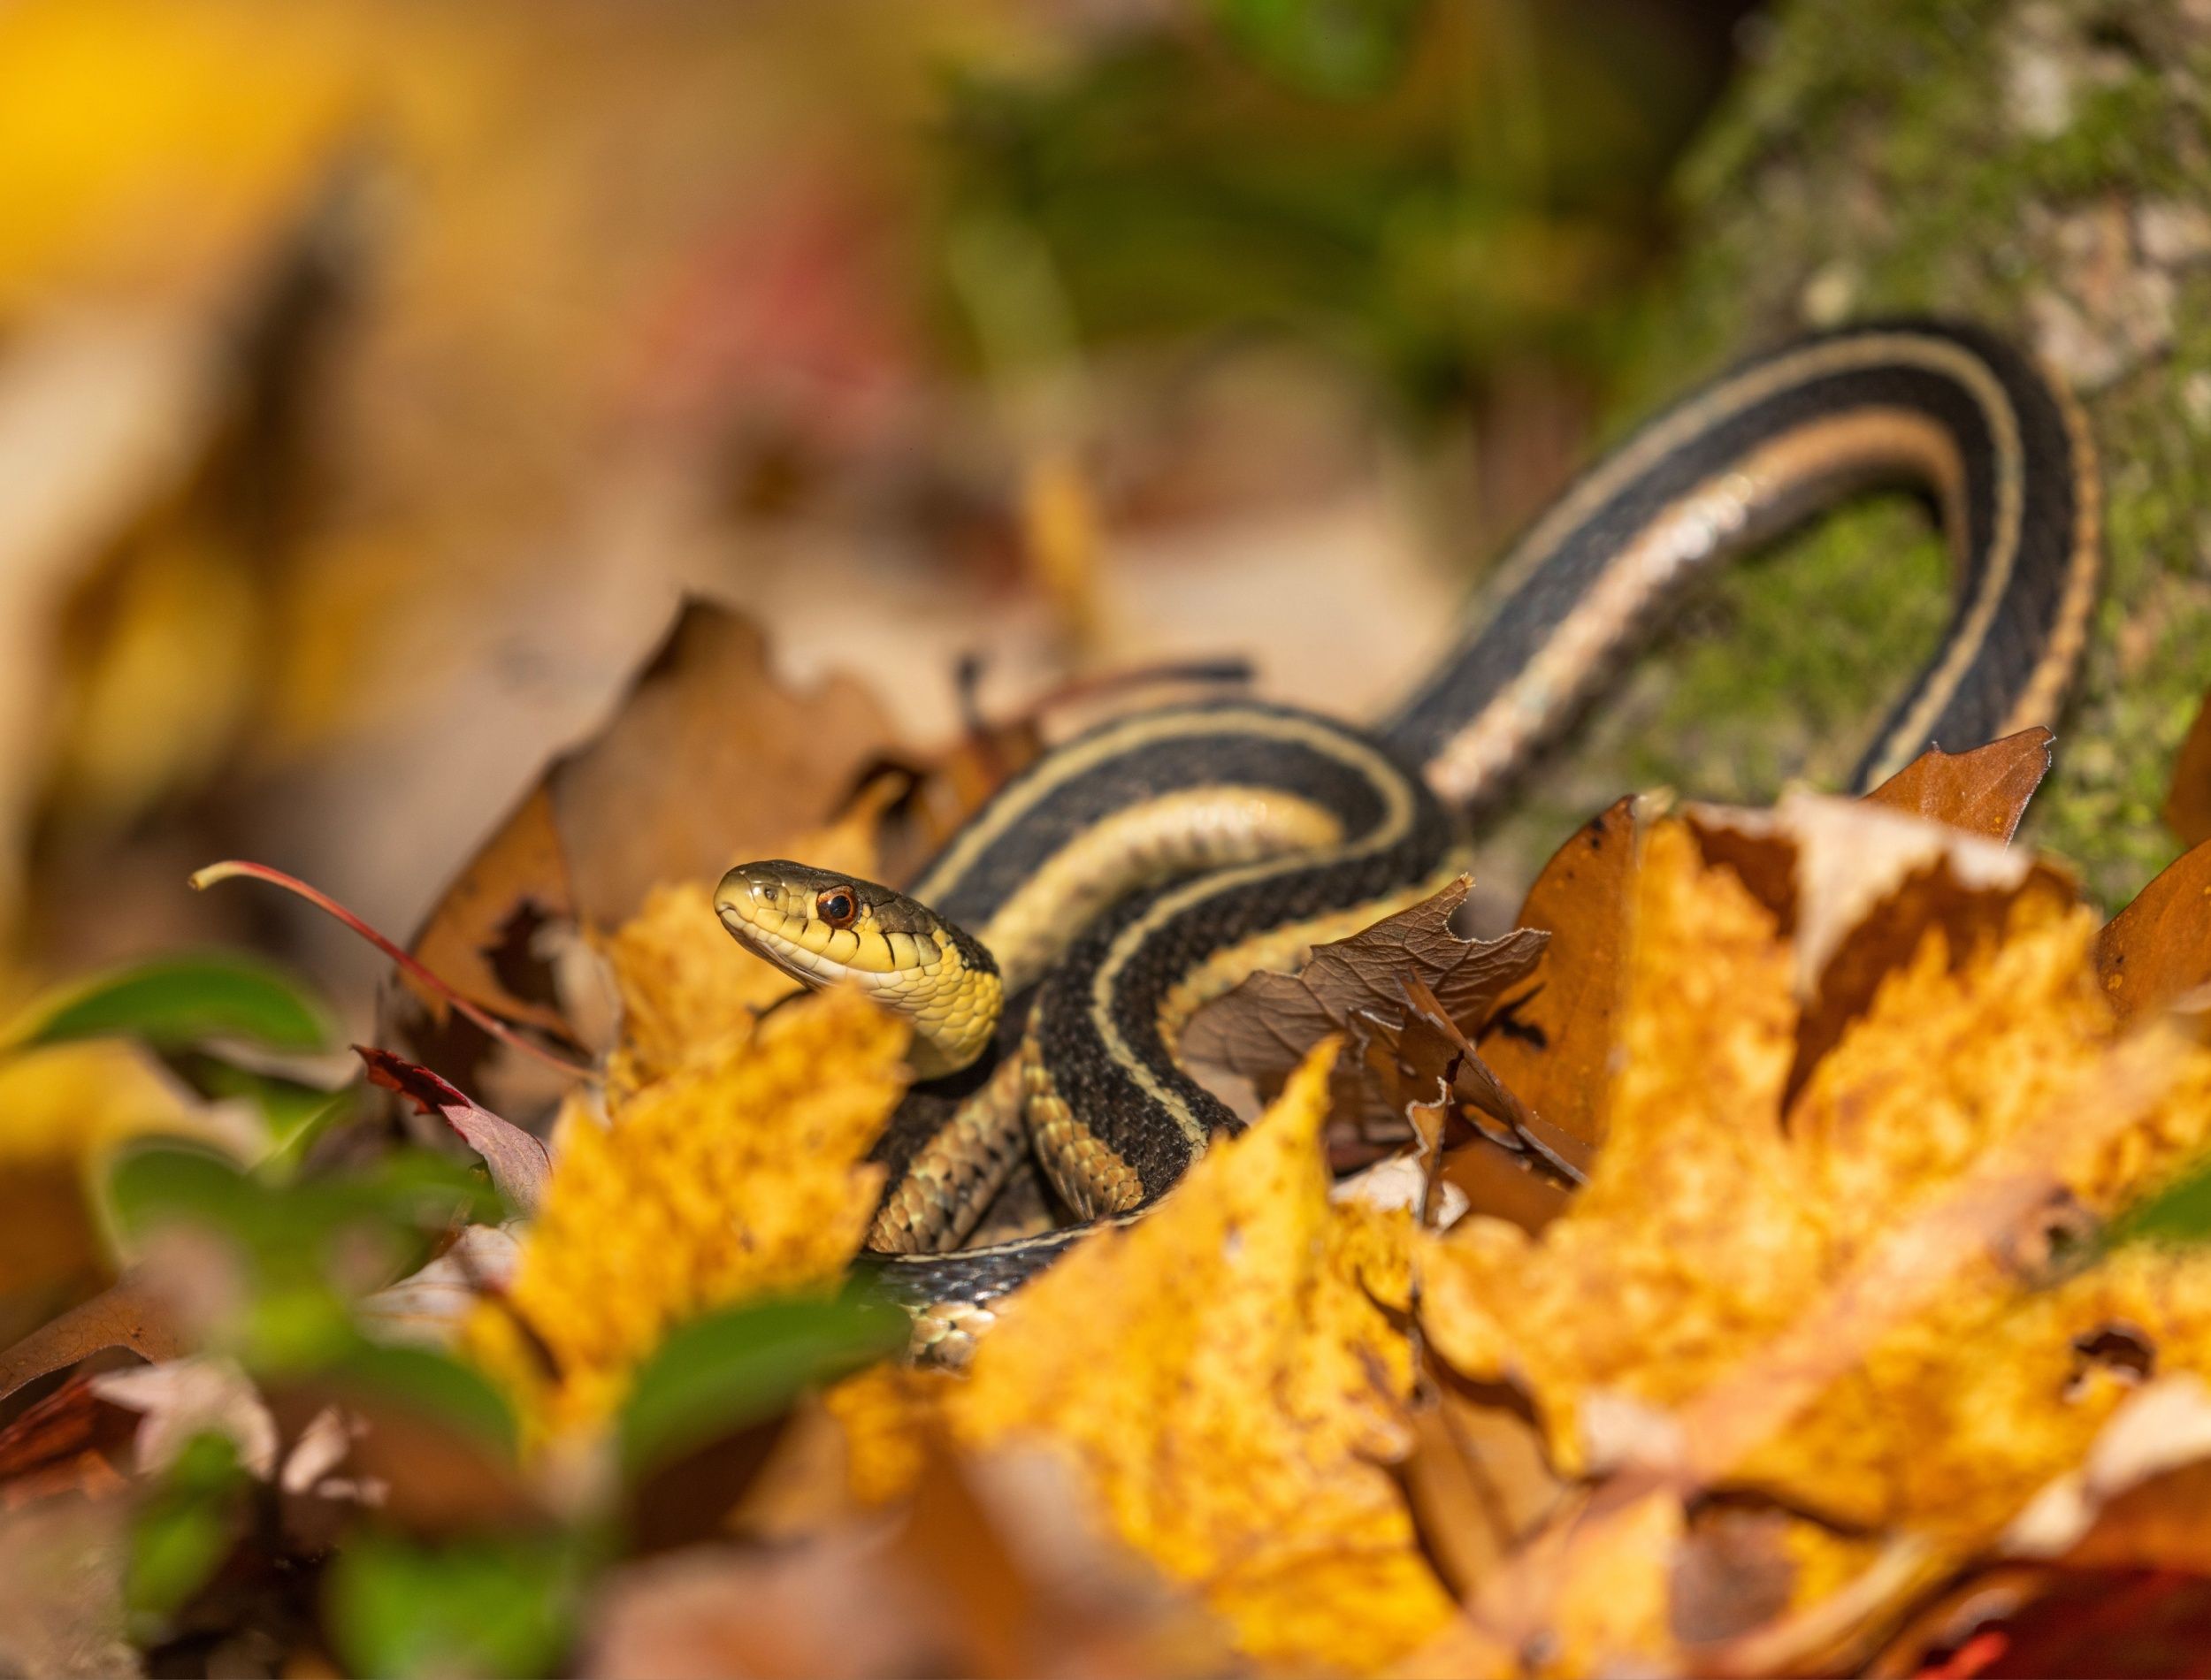 garter snake hidden in the leaves